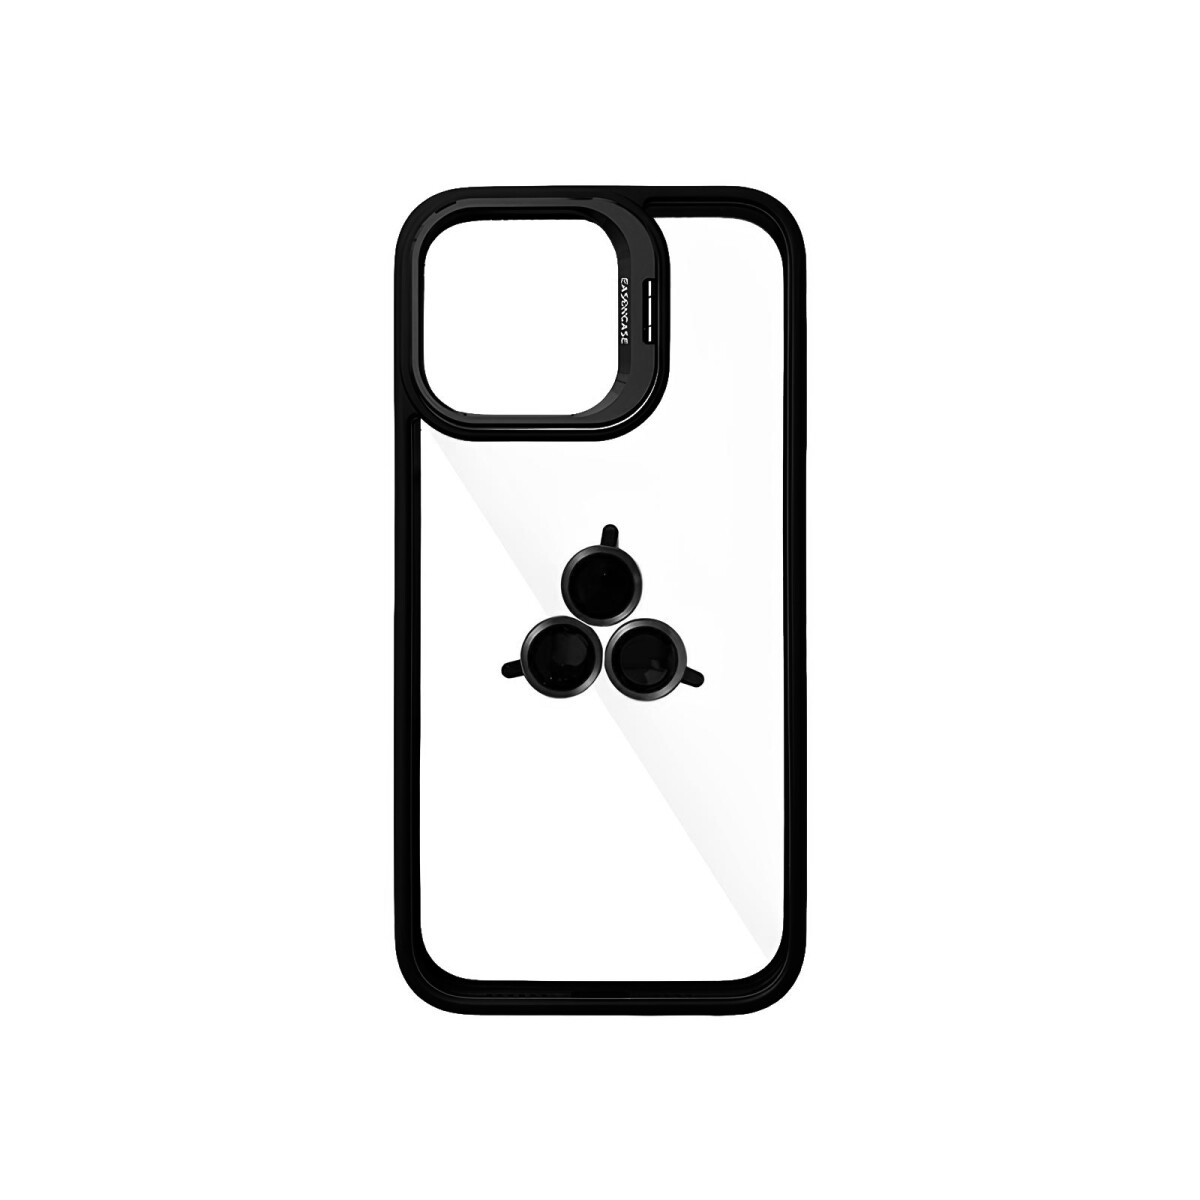 Case Transparente con Borde de Color y Protector de Lente Iphone 11 - Black 